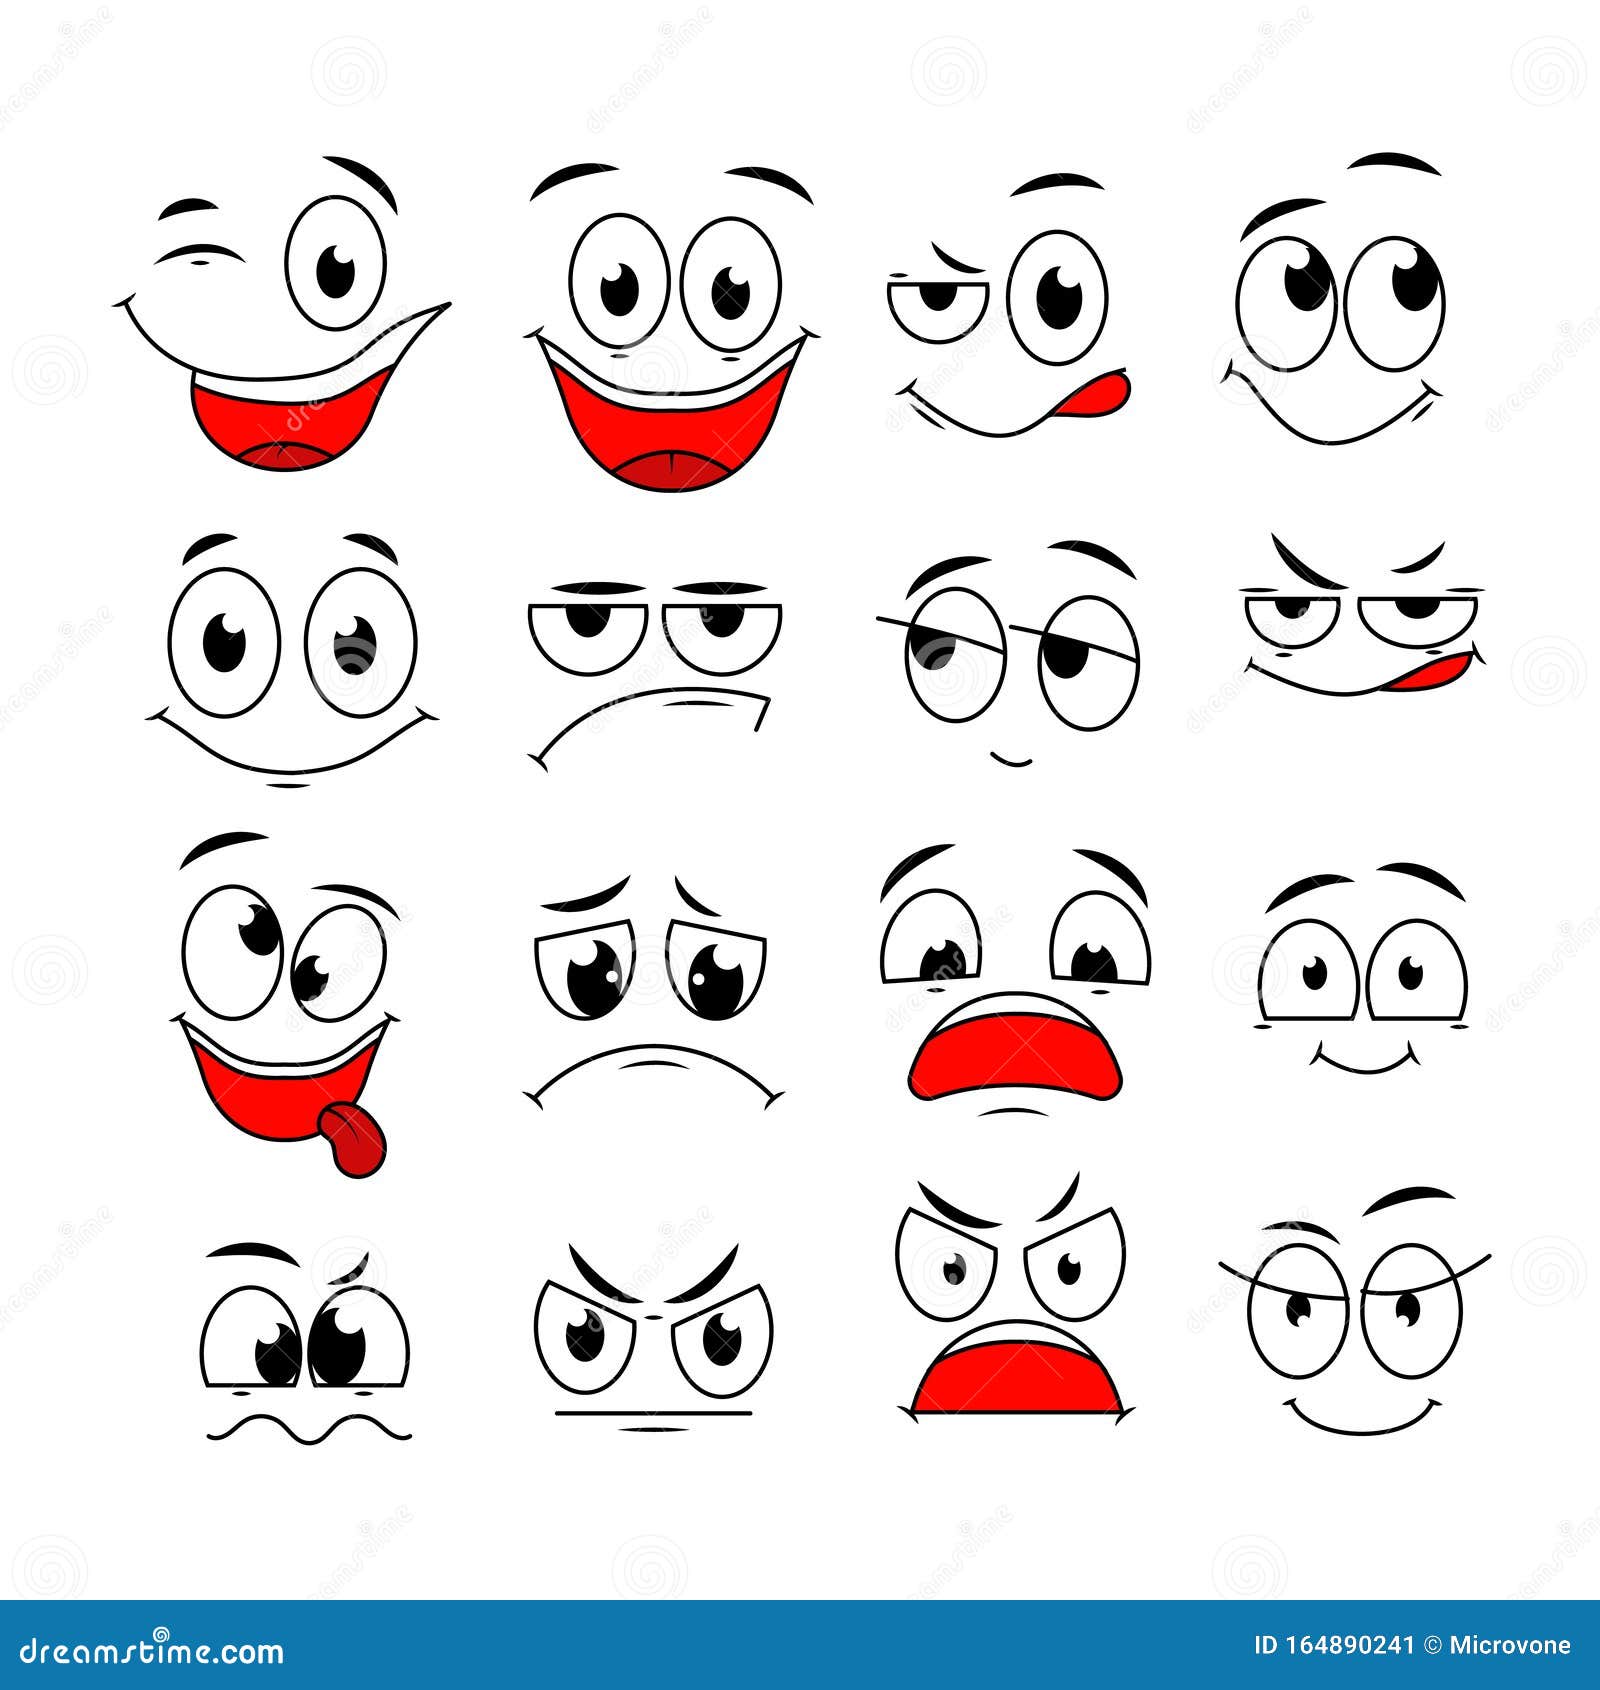 rostos de desenhos animados. boca e olhos expressivos, sorriso, choro e  expressões faciais de personagens surpresos. emoções em quadrinhos da  caricatura ou doodle emoticon. conjunto de ícones de ilustração vetorial  isolado 3498645